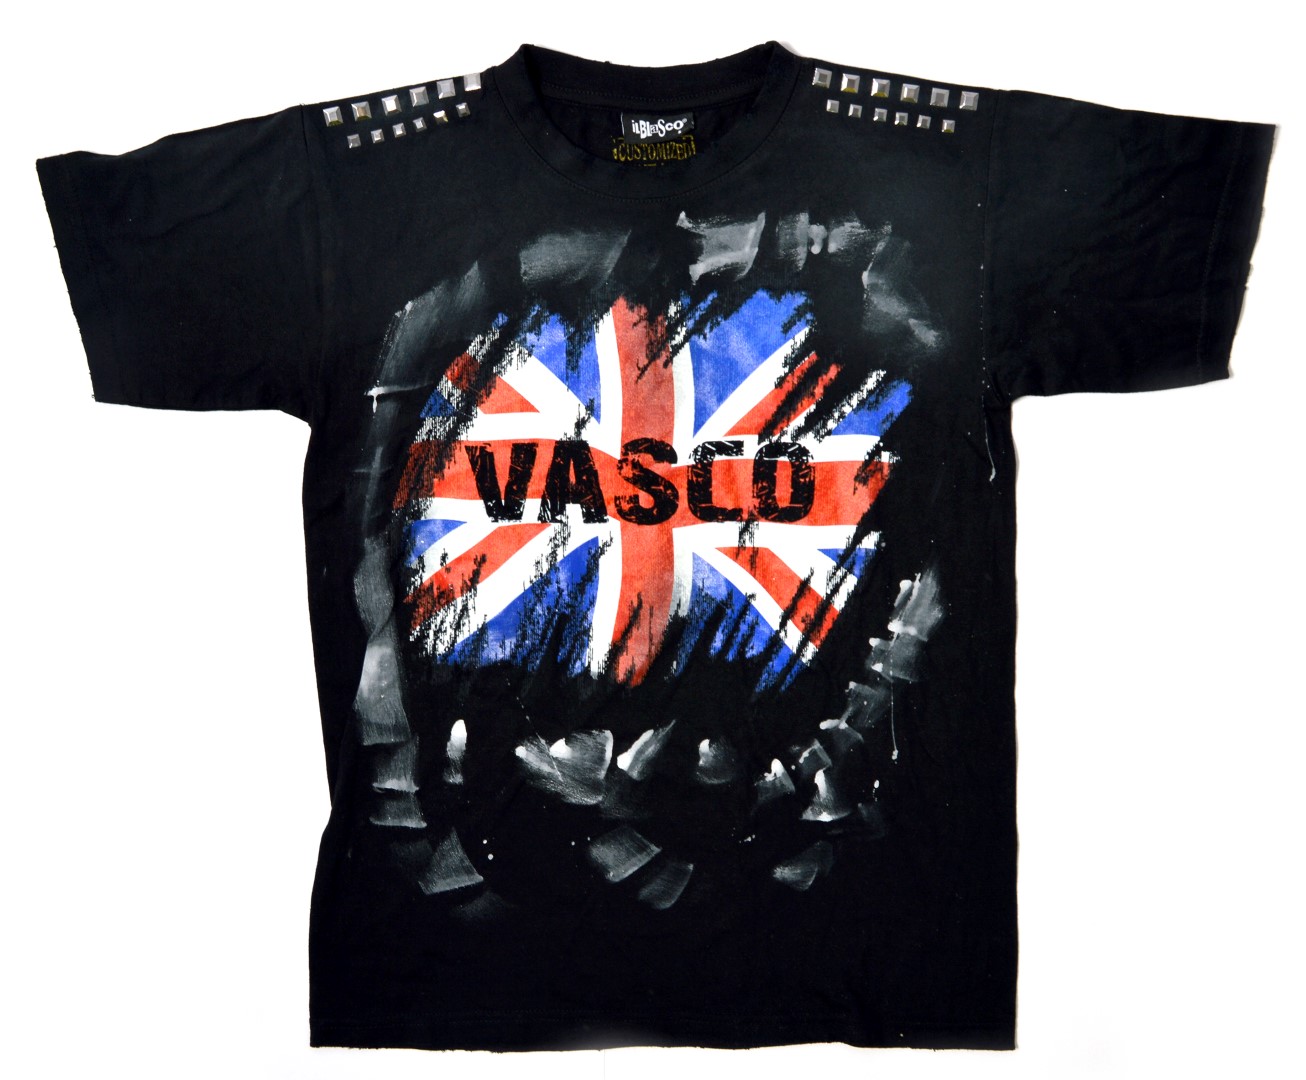 Pitti Uomo 2013 Giugno: Happiness presenta la collezione di t-shirt dedicate a Vasco Rossi